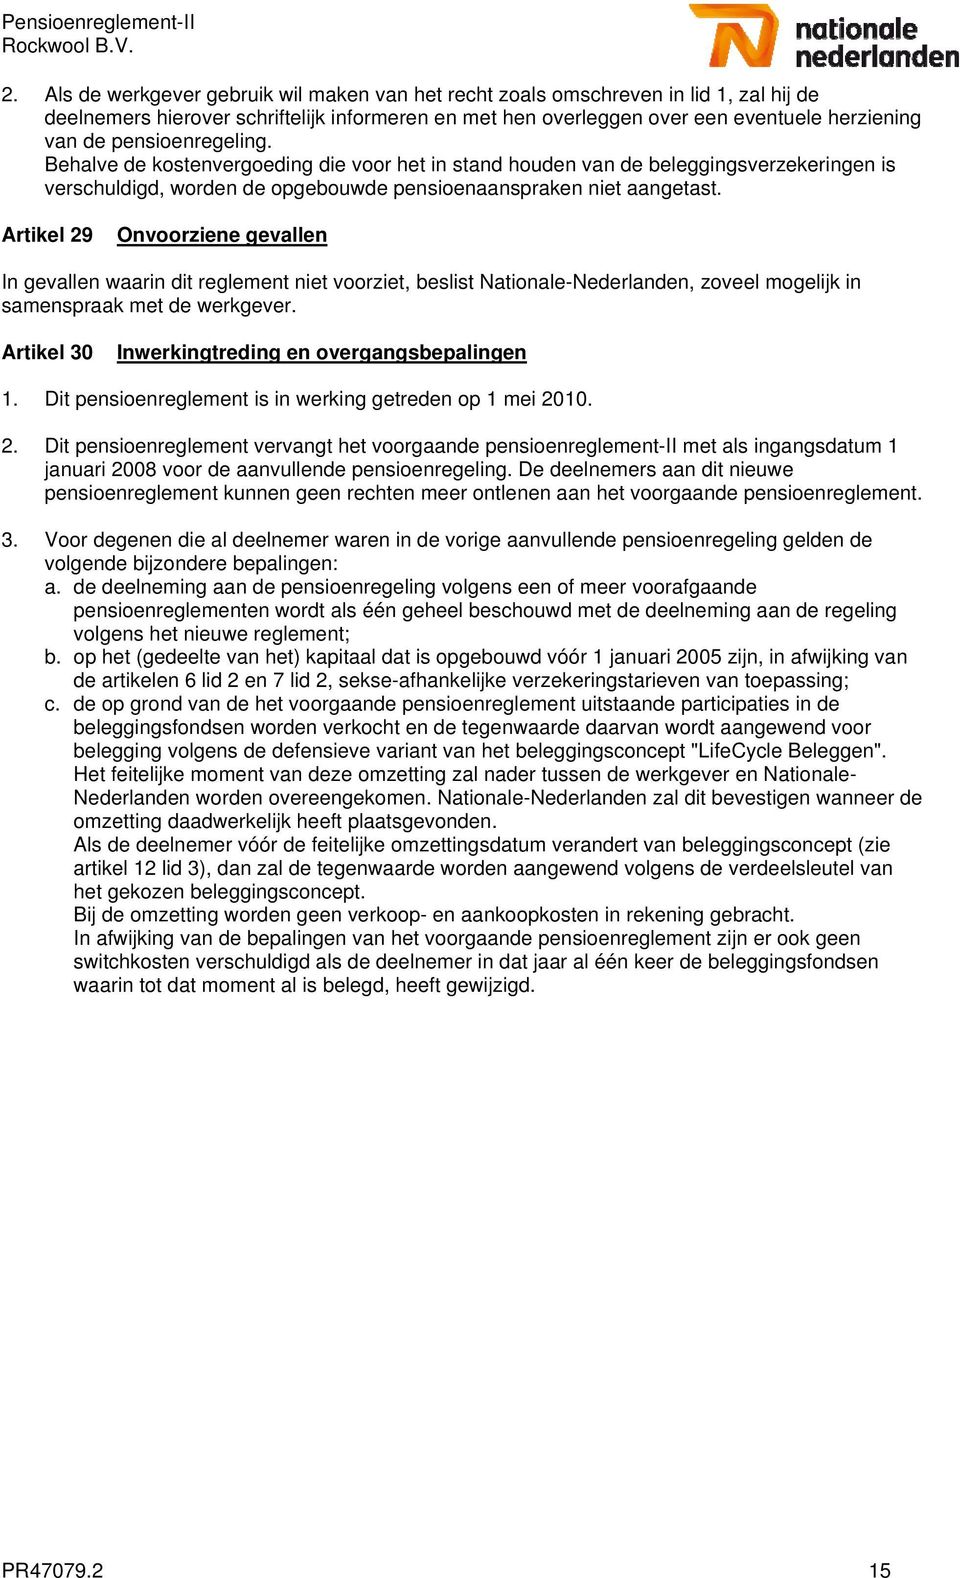 Artikel 29 Onvoorziene gevallen In gevallen waarin dit reglement niet voorziet, beslist Nationale-Nederlanden, zoveel mogelijk in samenspraak met de werkgever.